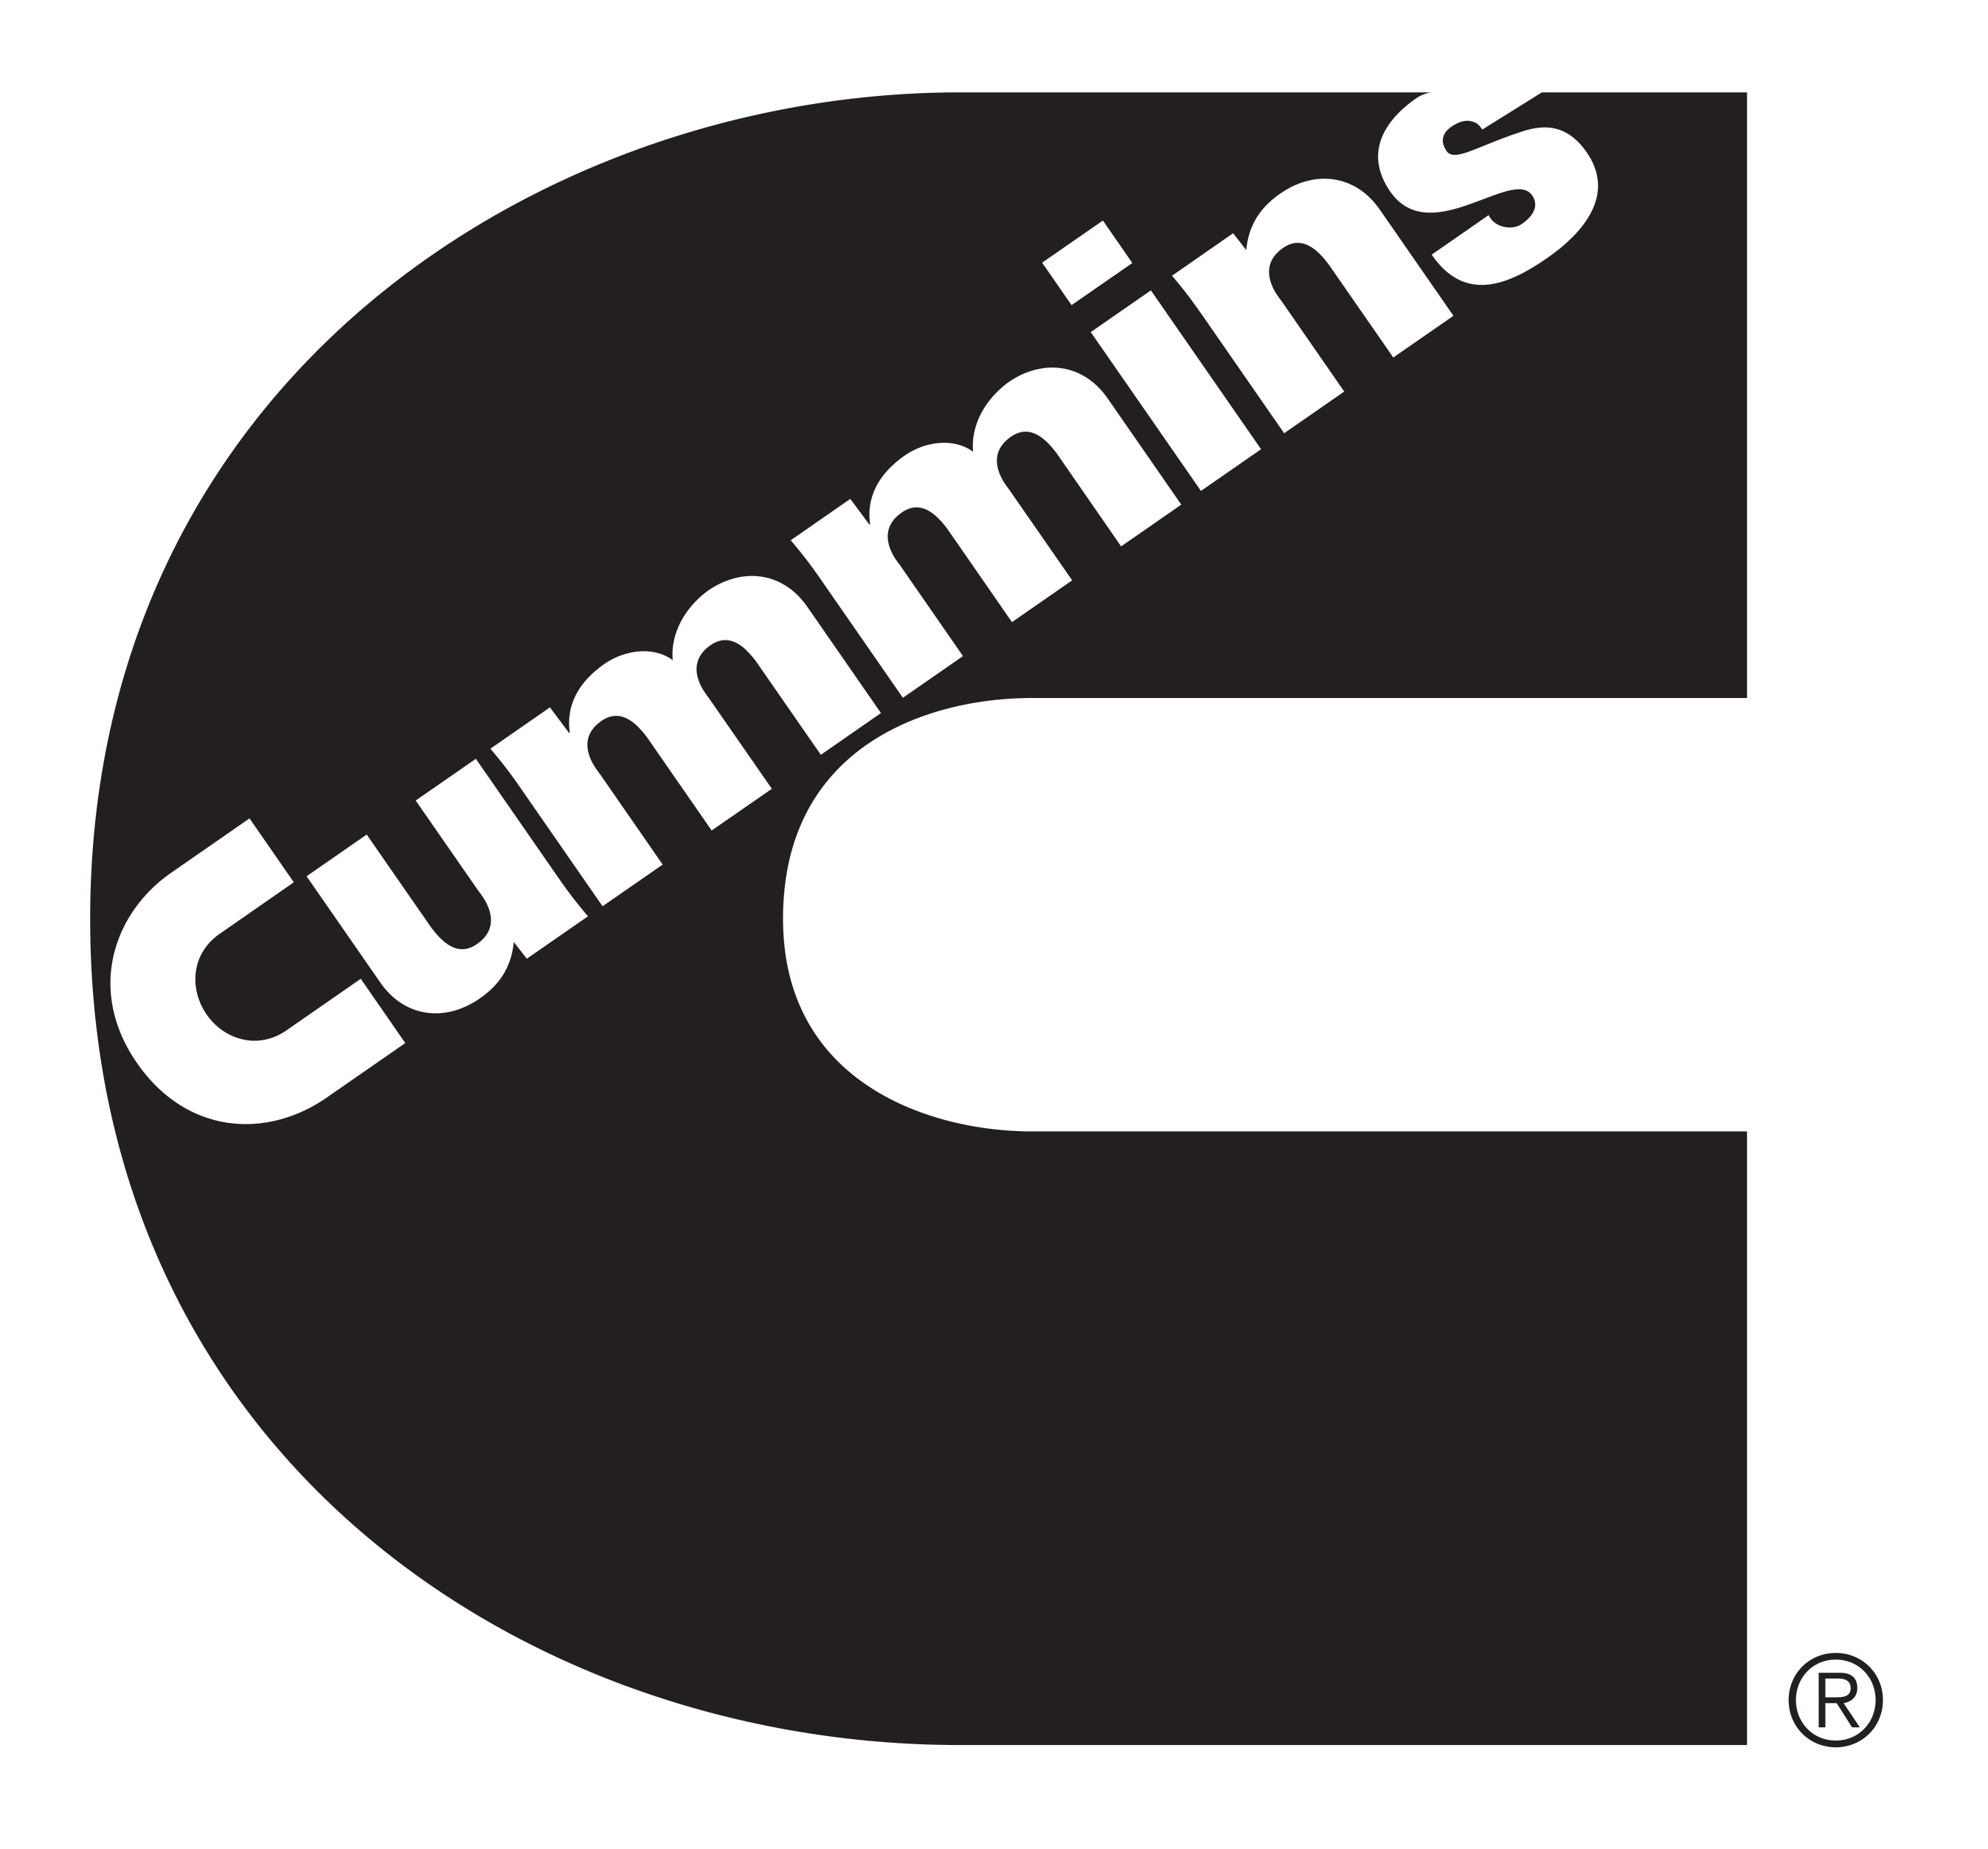 Cummins Logo PNG Image.